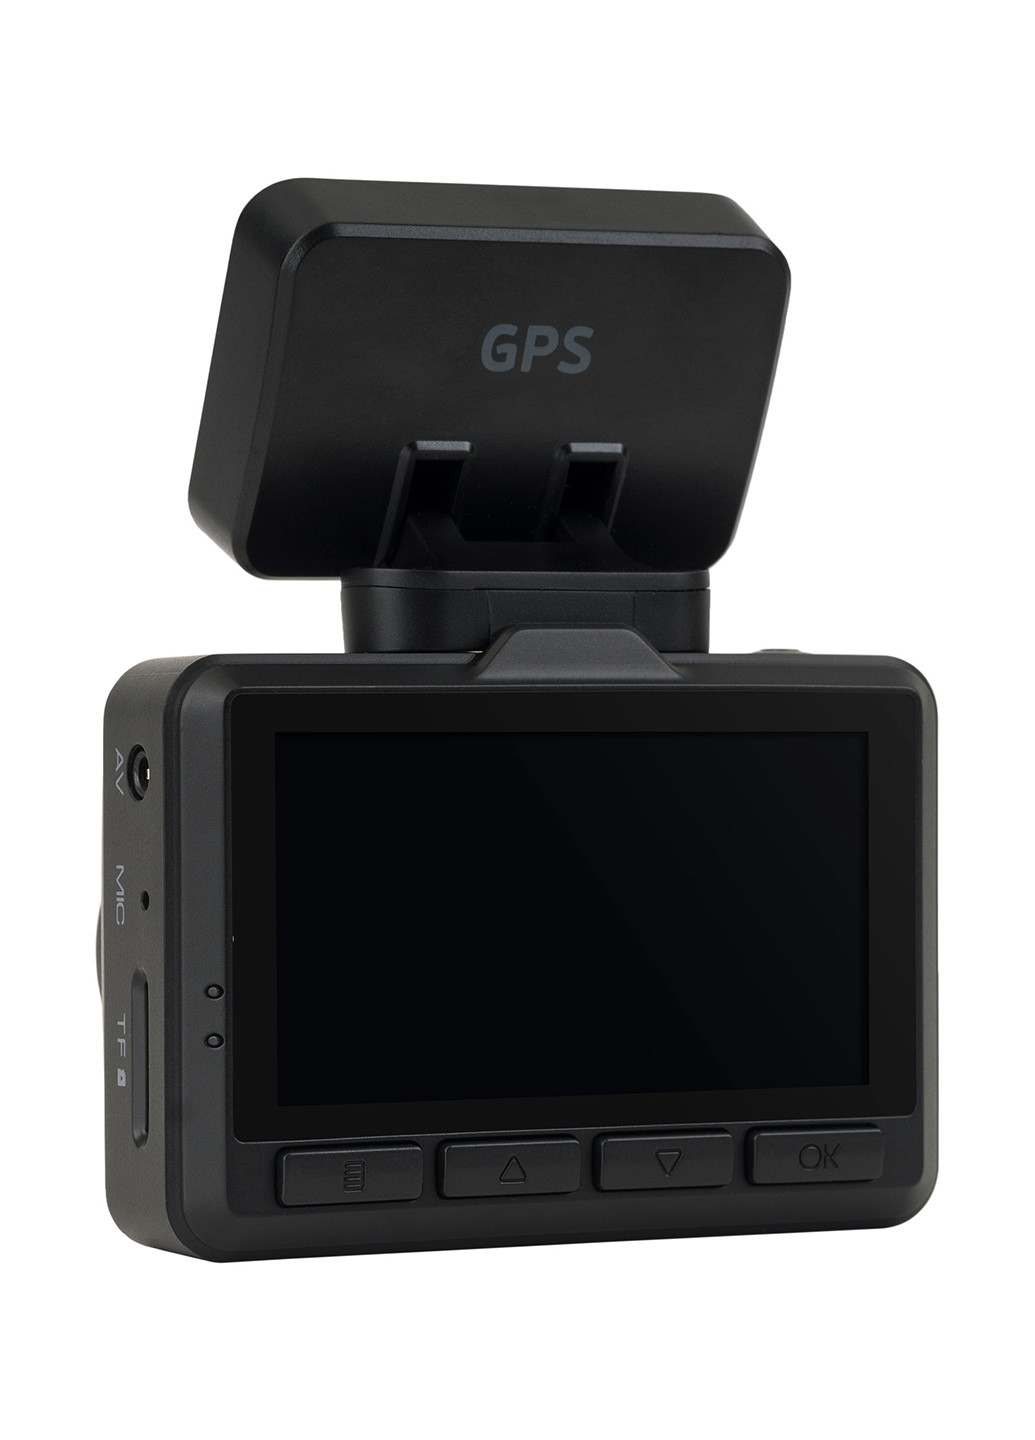 Відеореєстратор GE-304WG Wi-Fi / GPS / Magnet Globex ge-304wg wi-fi/gps/magnet (175984558)